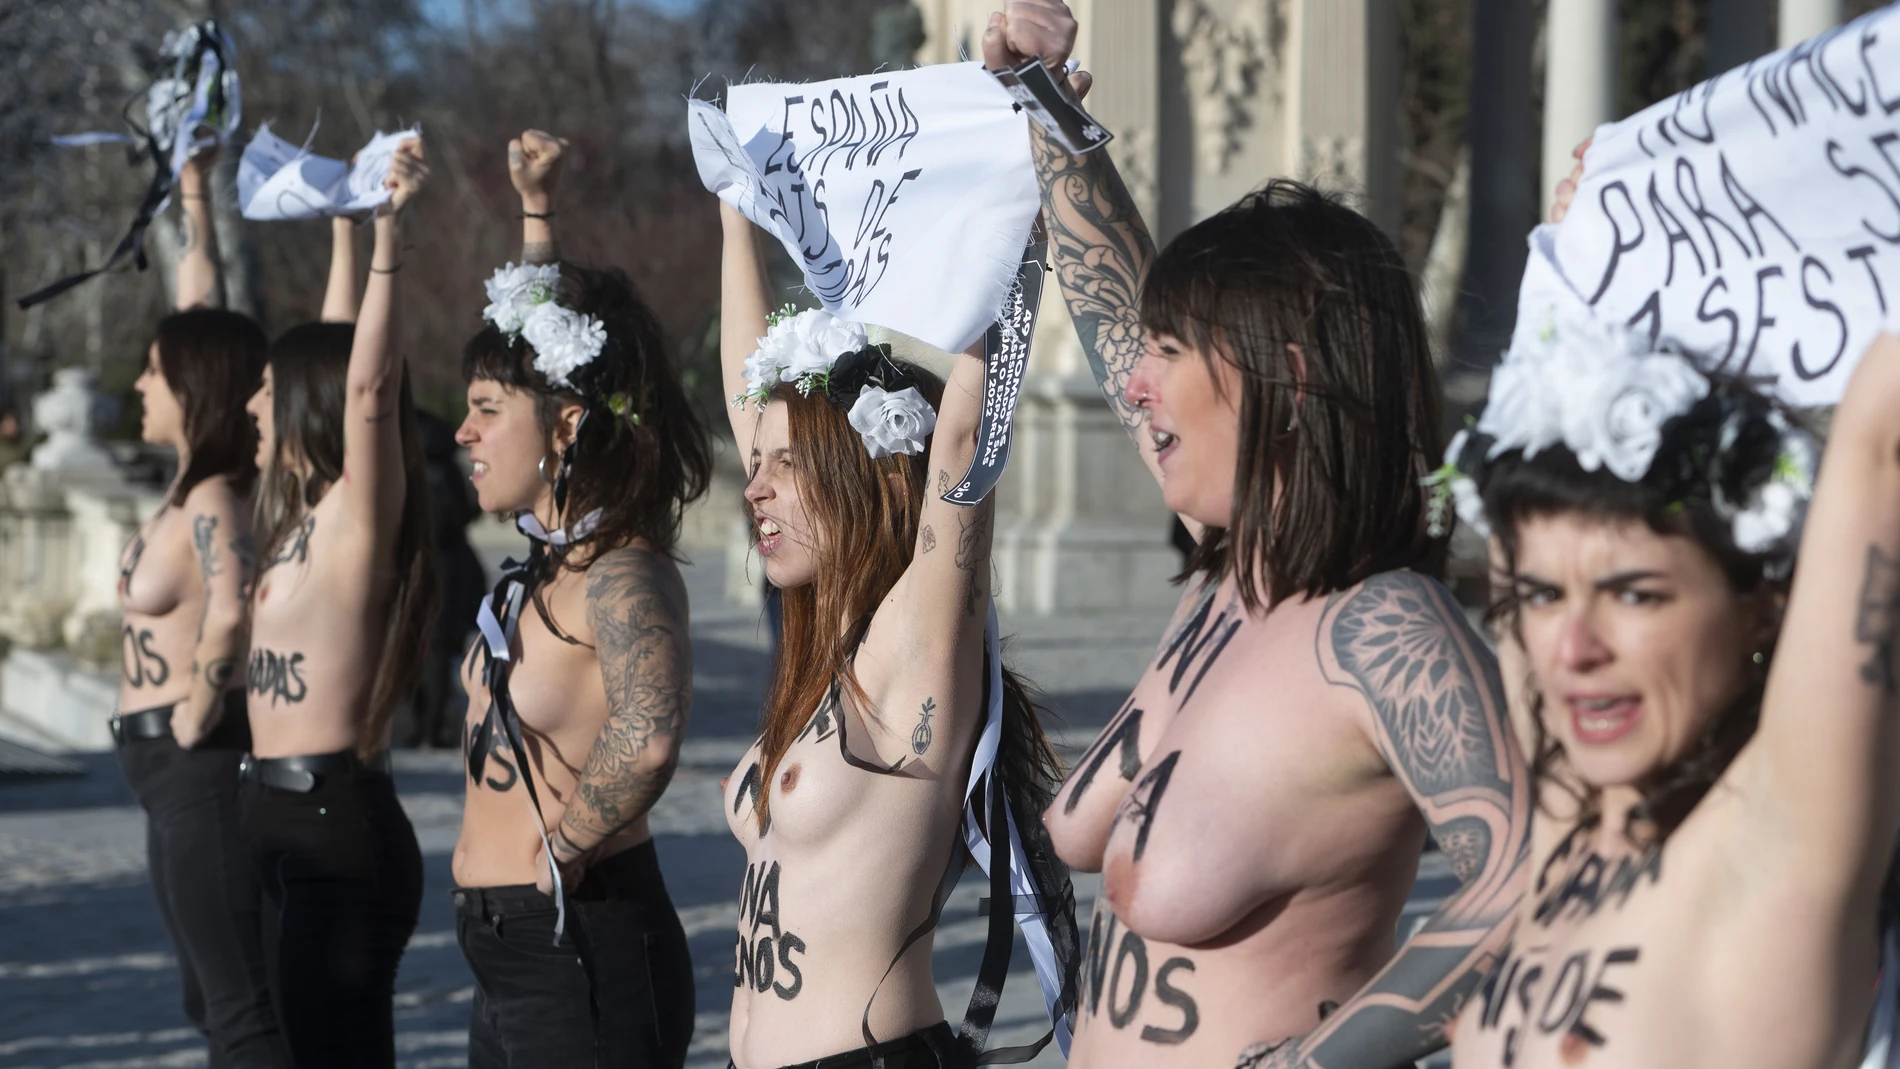 El juez ha tomado declaración al policía imputado por "agarrar el pecho" a una activista de Femen durante su detención